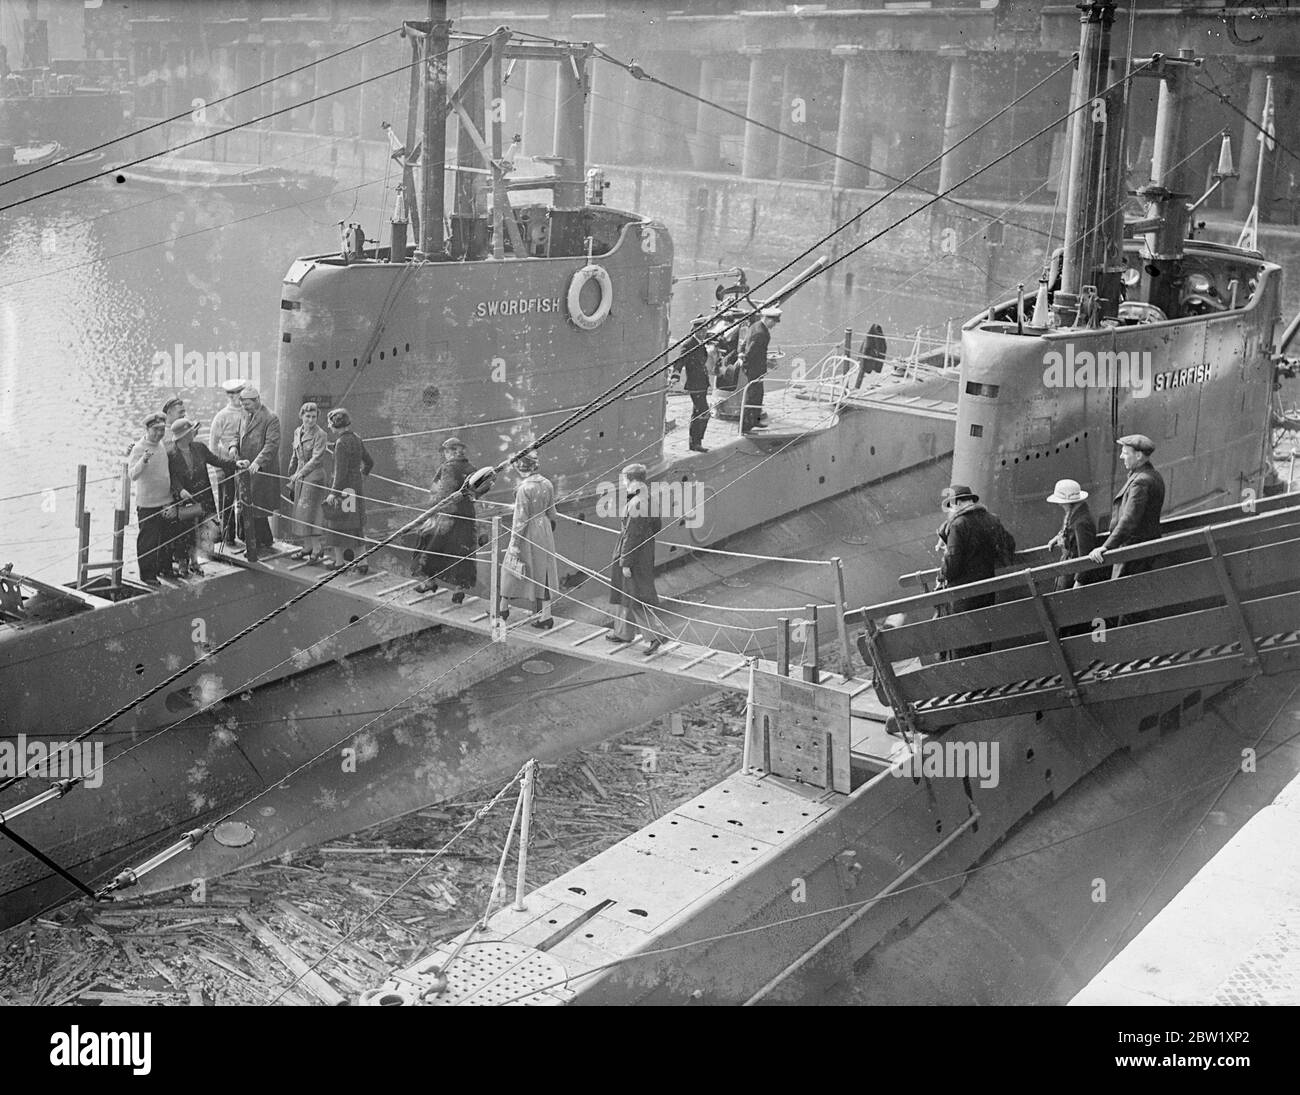 London sieht die Marine. U-Boote in Dock in der Nähe der Tower Bridge. Die U-Boote der Heimatflotte, die im Pool von London zur Krönung stationiert waren, wurden nur wenige Stunden nach ihrer Ankunft für die Besichtigung geöffnet. Fotoausstellungen: Besucher, die an Bord des U-Bootes HMS Swordfish (61S) im St Katharine's Dock, London, gehen. Ein weiteres Group One-U-Boot der britischen S-Klasse HMS Starfish (19S) schlägt sich vor. Mai 1937 Stockfoto